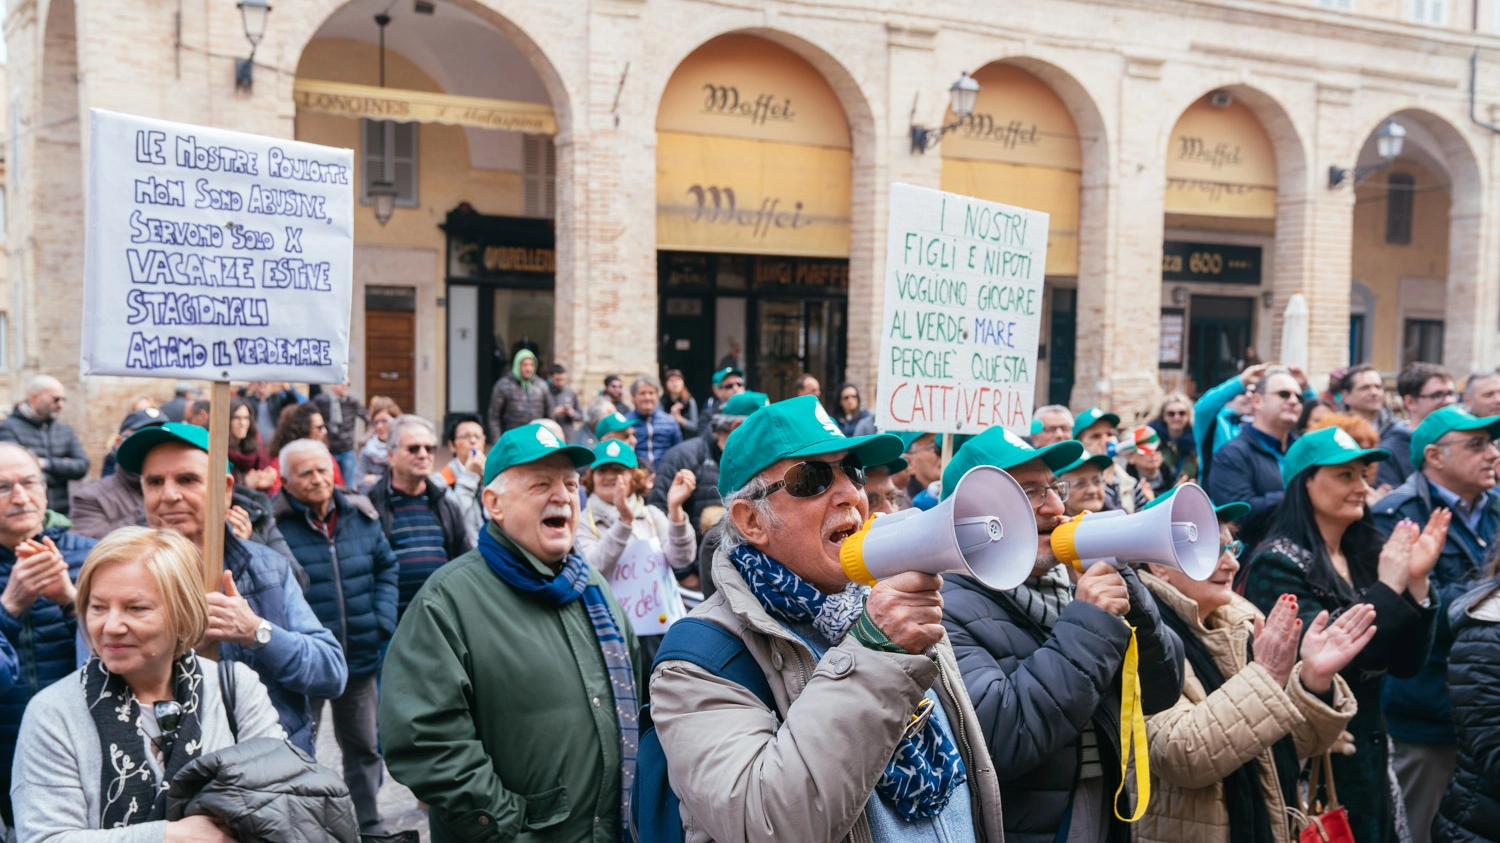 Verde Mare, la protesta dei clienti (foto Zeppilli)